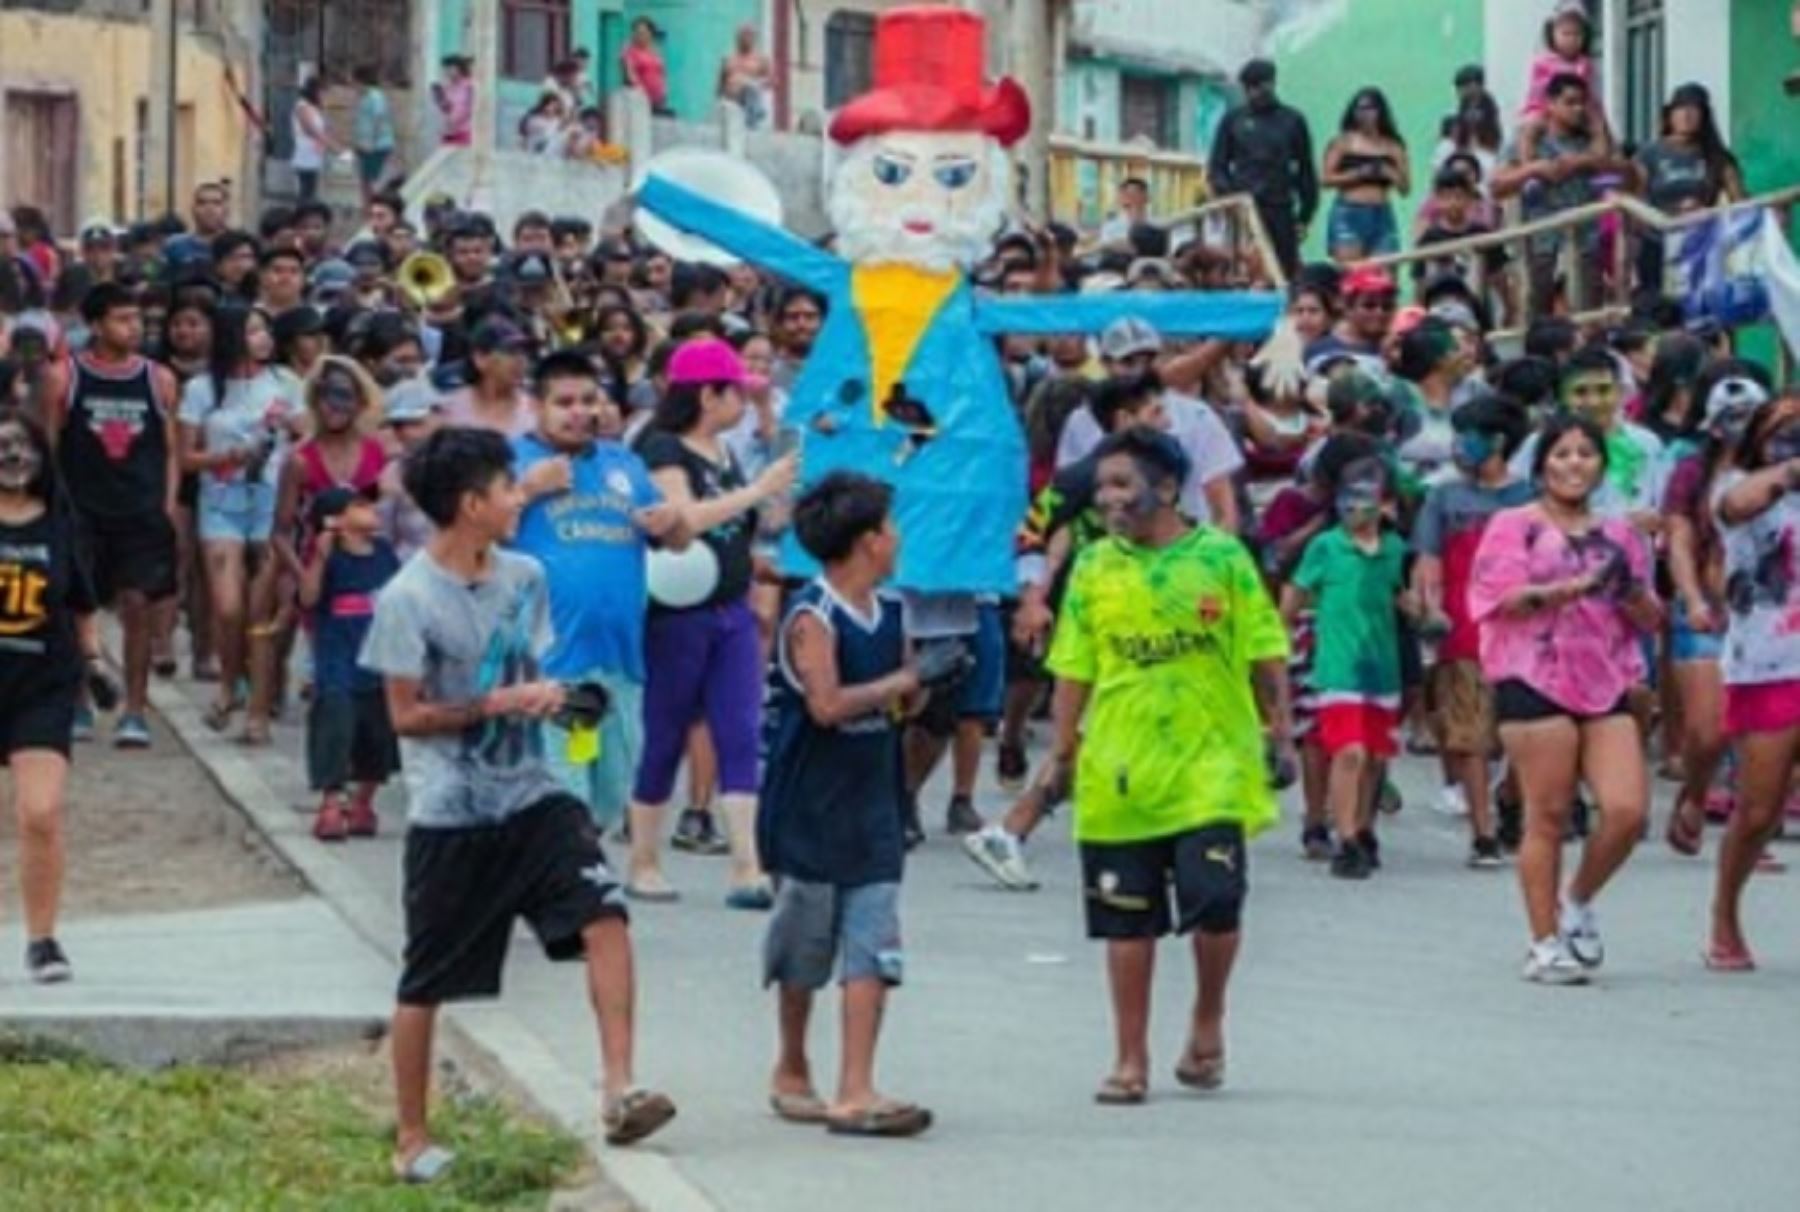 El 24 y 25 de febrero se celebra la festividad del “Ño Carnavalón de Carquín”, parte de la tradición de este hermoso distrito costero y caleta de pescadores de la provincia de Huaura.